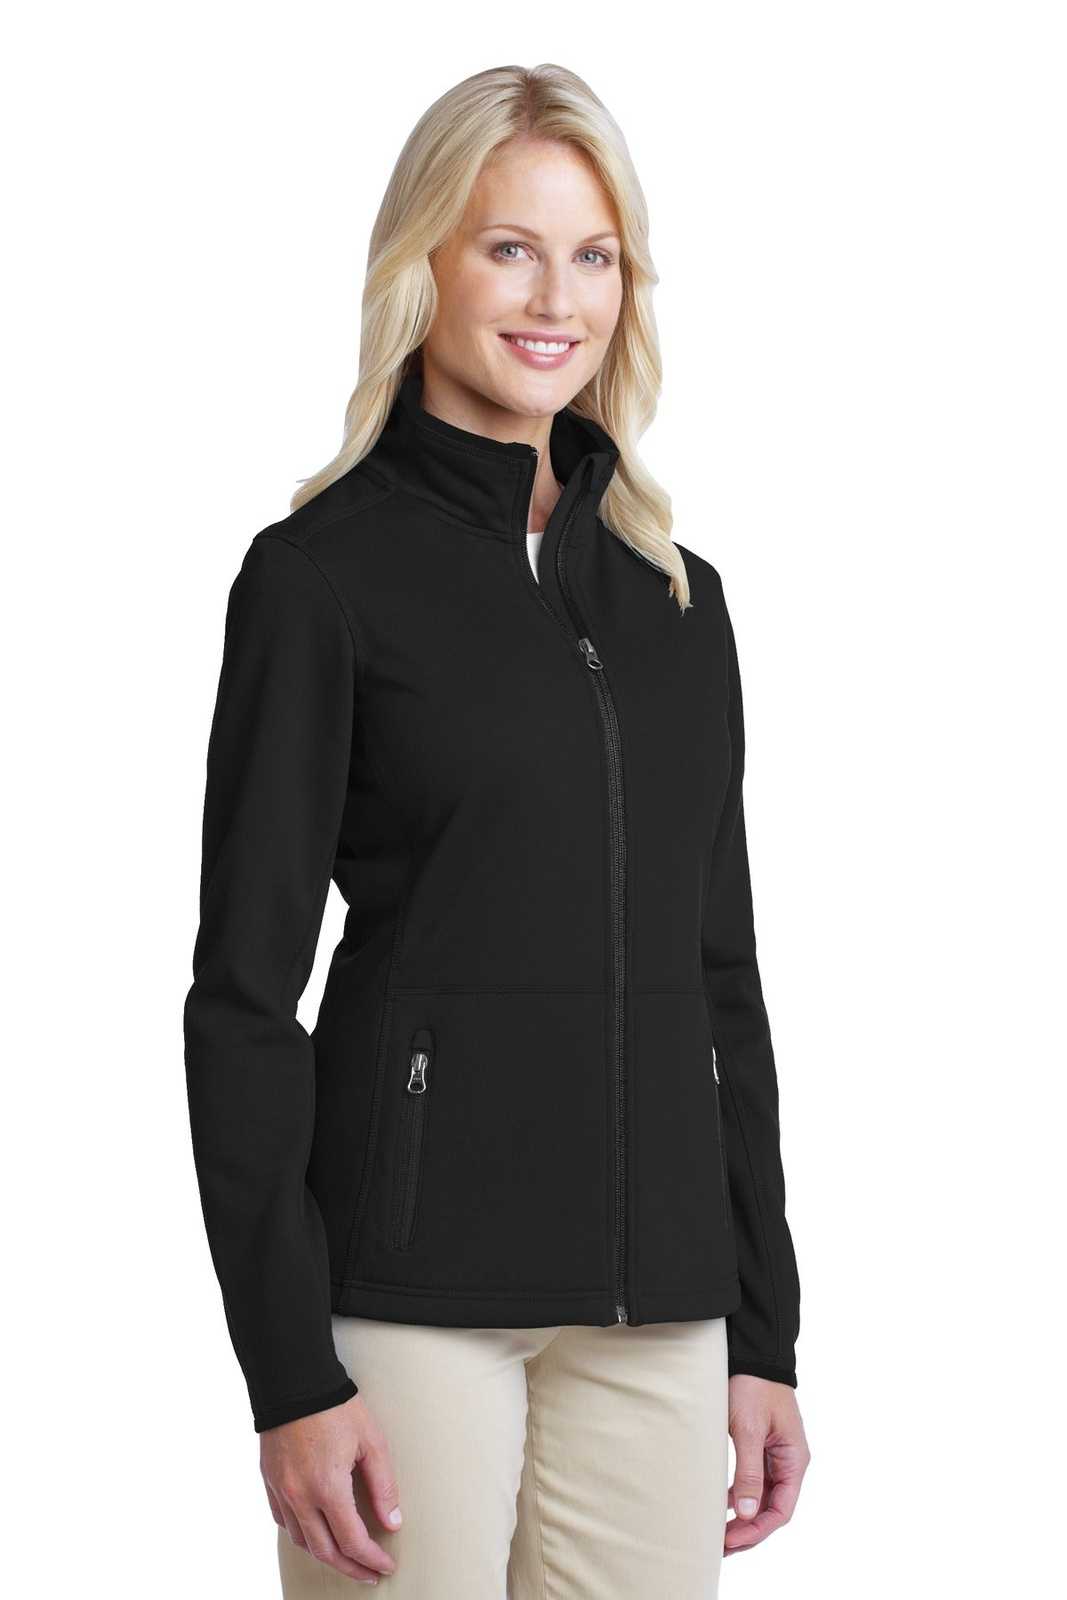 Port Authority L222 Ladies Pique Fleece Jacket - Black - HIT a Double - 4